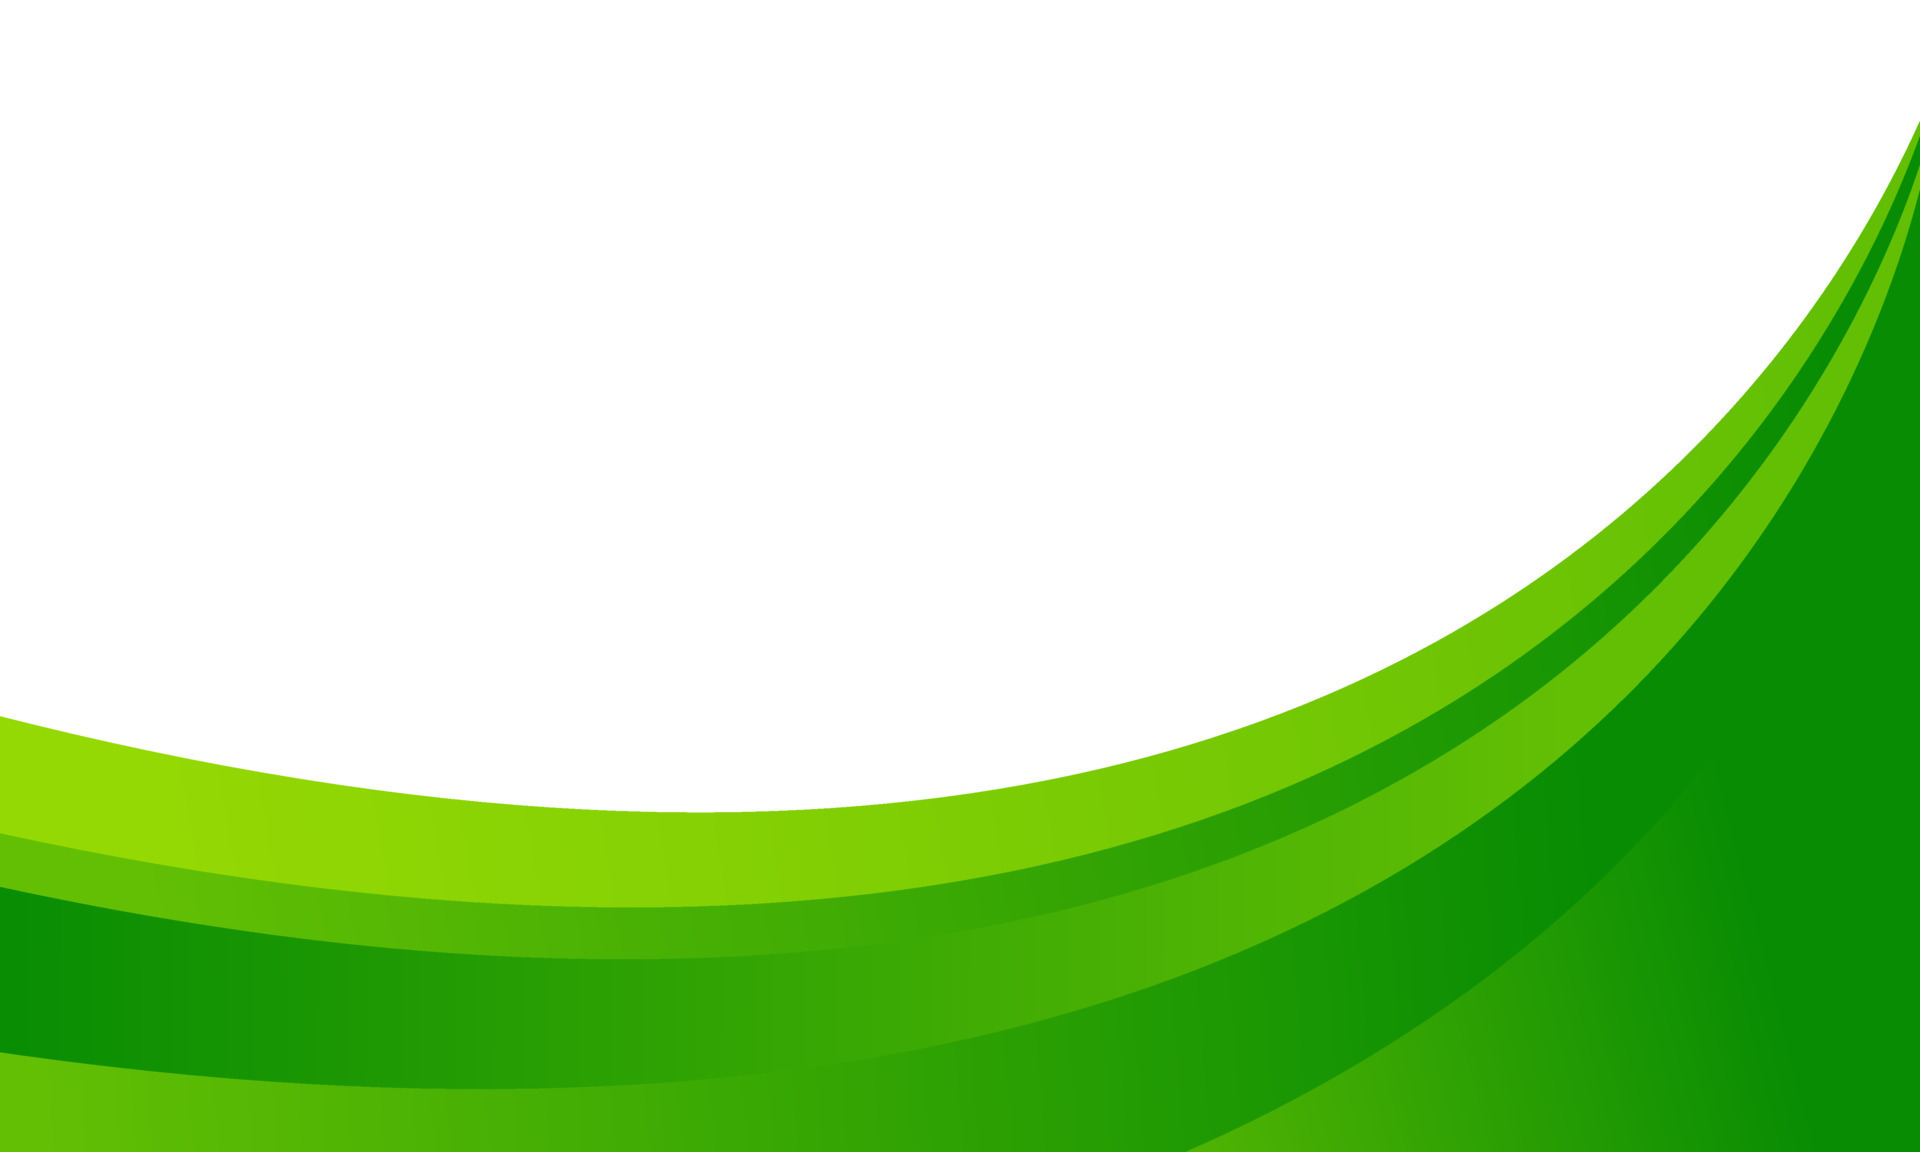 Green Curve Background Vector: Hãy tận hưởng kết hợp tuyệt vời của đường cong mềm mại và màu xanh tươi mát với bức tranh Green Curve Background Vector. Bức tranh sẽ đem đến cho bạn và gia đình cảm giác nhẹ nhàng, thư giãn và tươi mới mỗi khi nhìn vào.